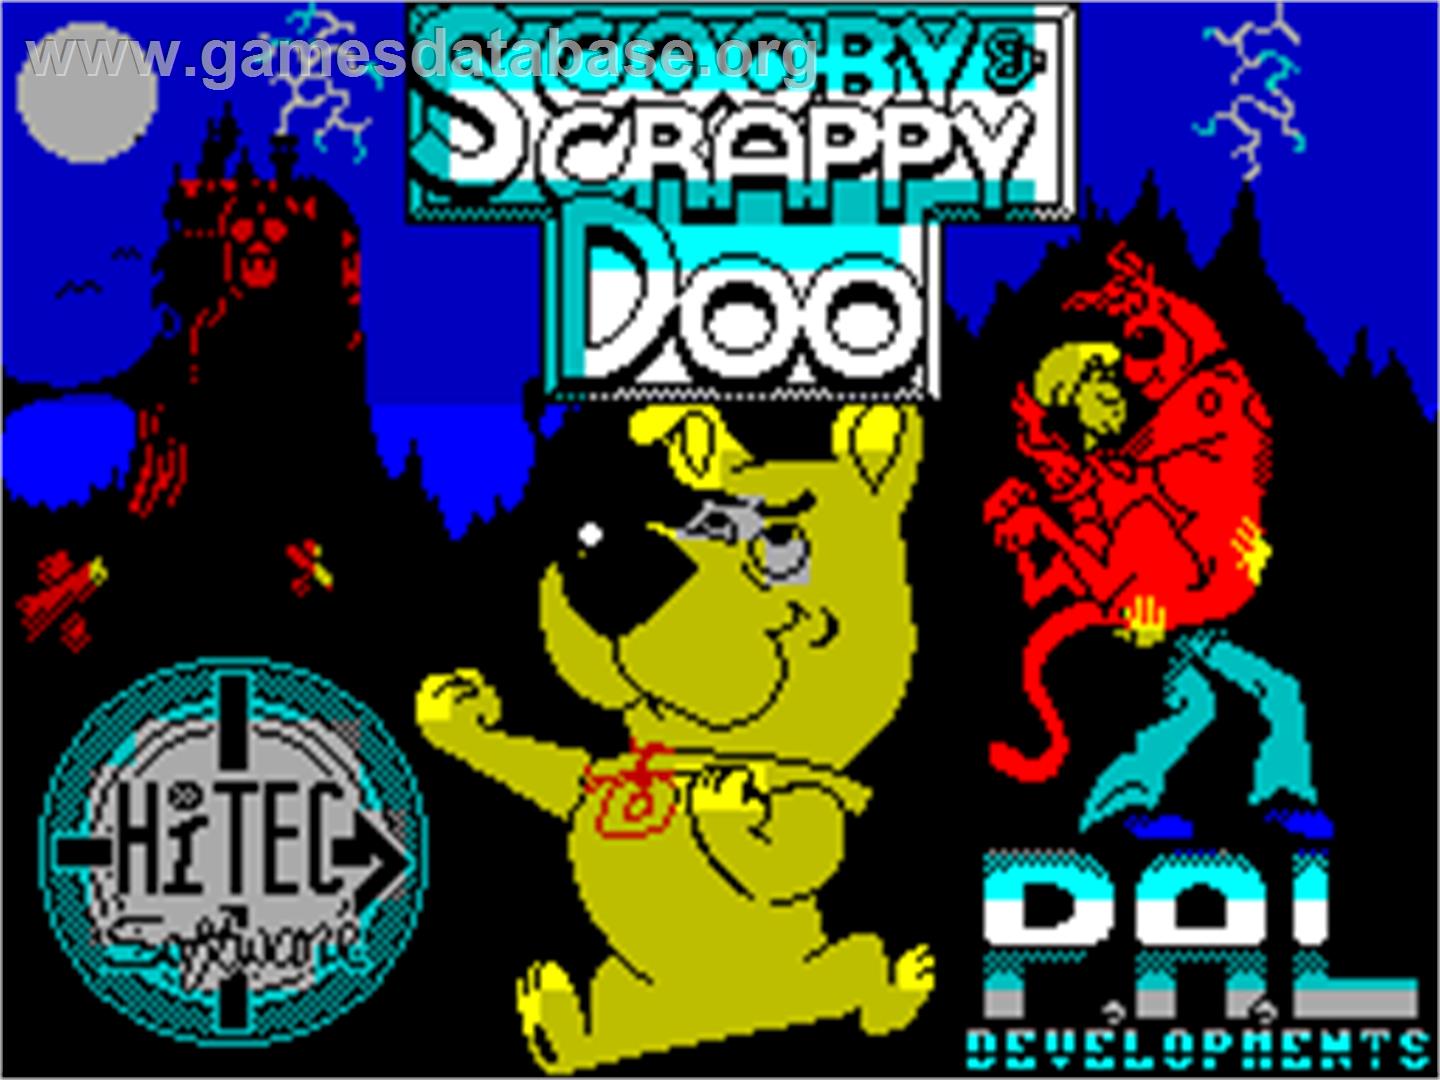 Scooby Doo and Scrappy Doo - Sinclair ZX Spectrum - Artwork - Title Screen